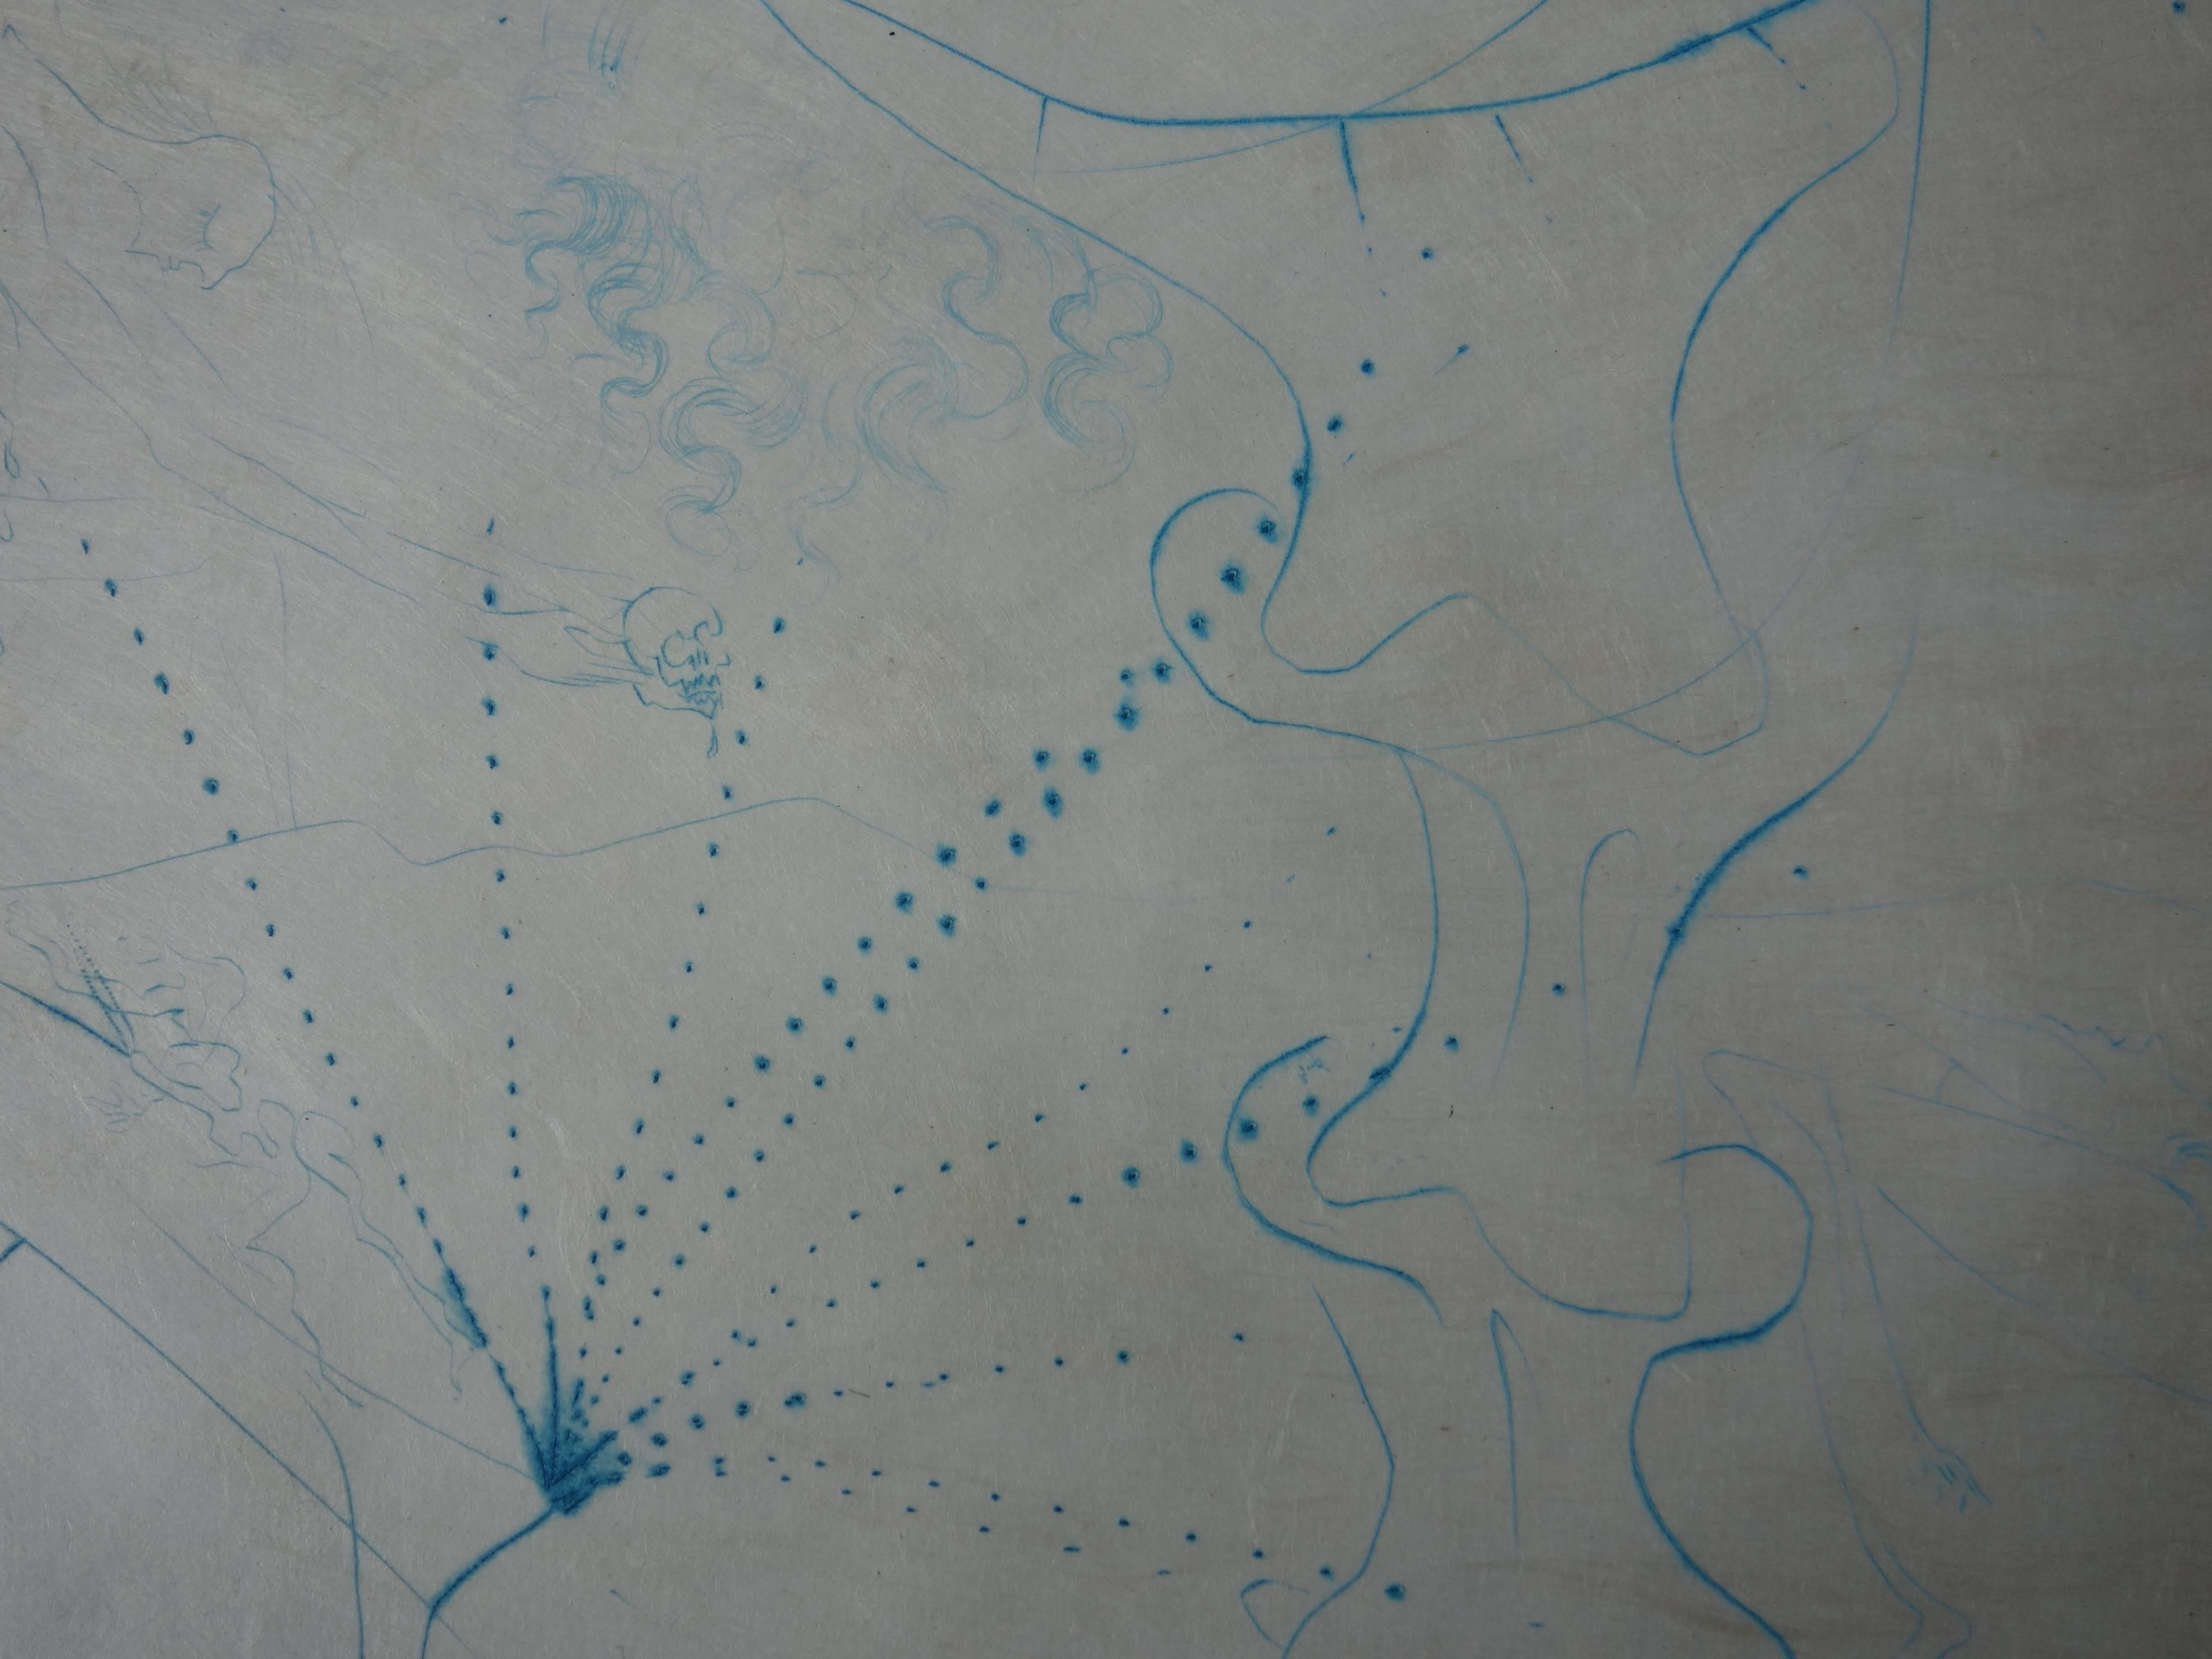 Salvador DALI
Femme feuille, 1969

Gravure originale 
Signé en bas à droite avec le cachet de l'artiste
Épreuve rare en bleu
Sur papier japonais 38 x 28 cm (c. 15 x 11 in)

Références :
- Catalogue raisonné Field #68-6F
- Catalogue raisonné Michler